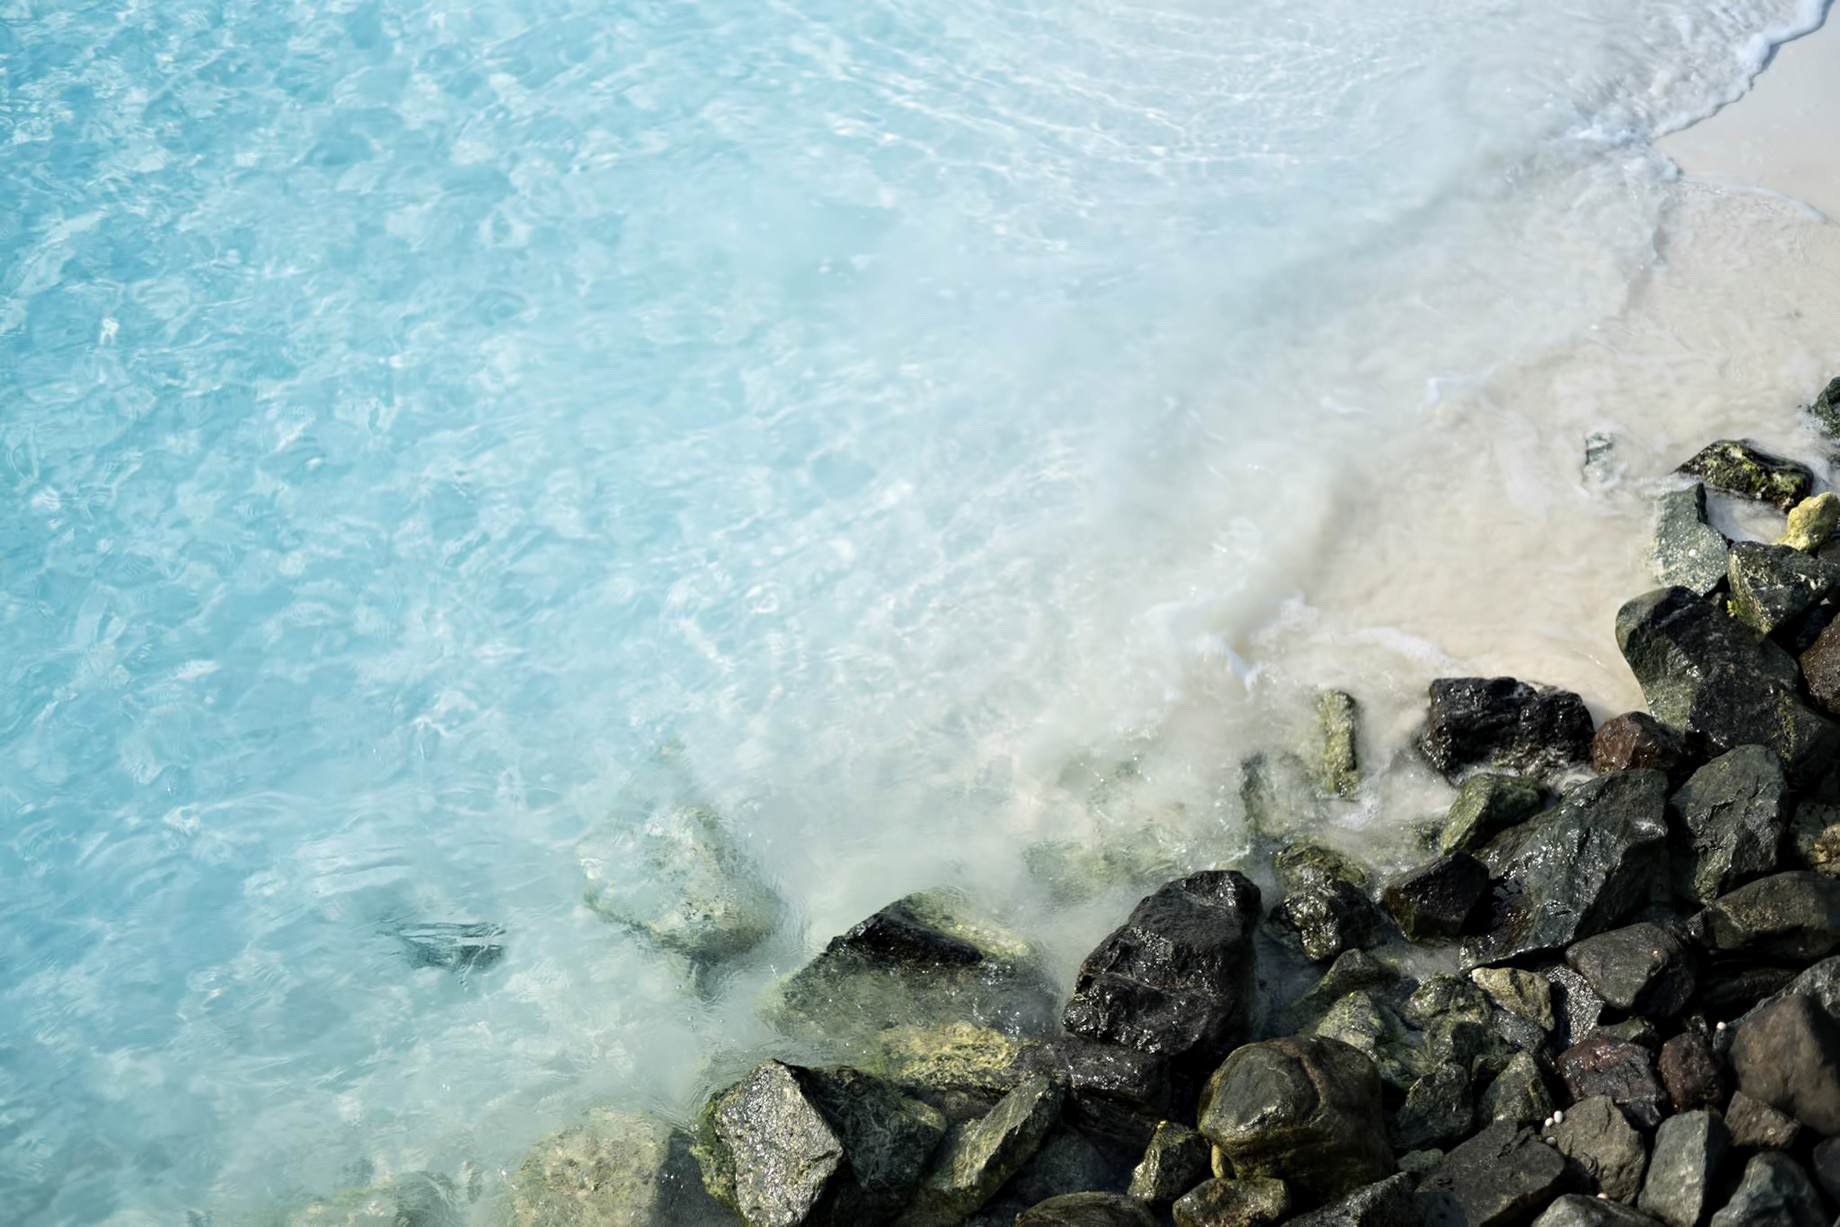 Cheval Blanc Randheli Resort – Noonu Atoll, Maldives – Indian Ocean Turquios Water